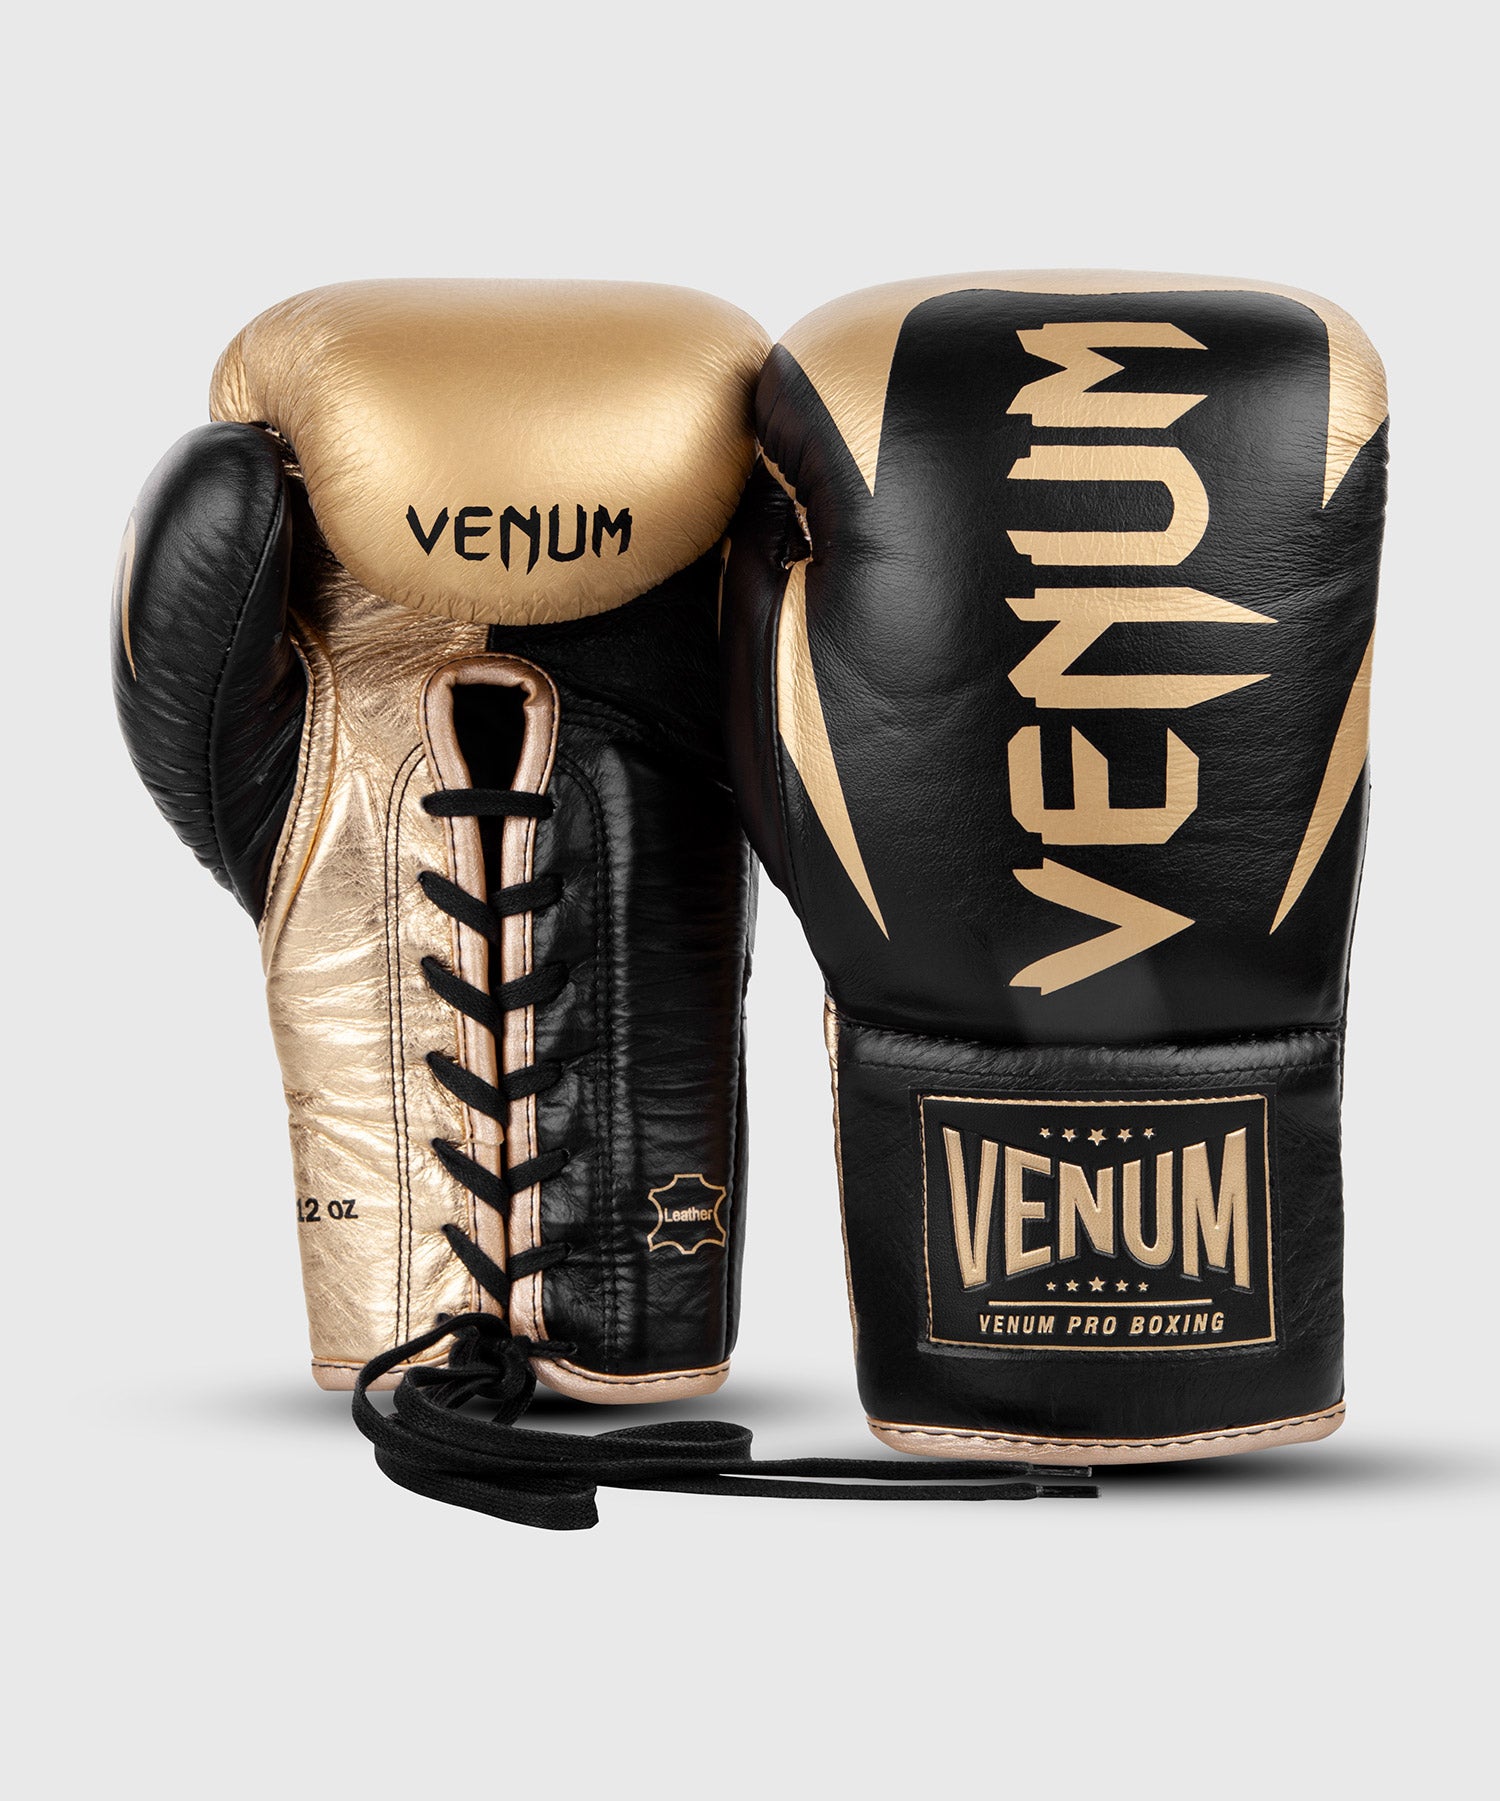 Gants de boxe Venum, gants abarth Venum, boutique de Venum